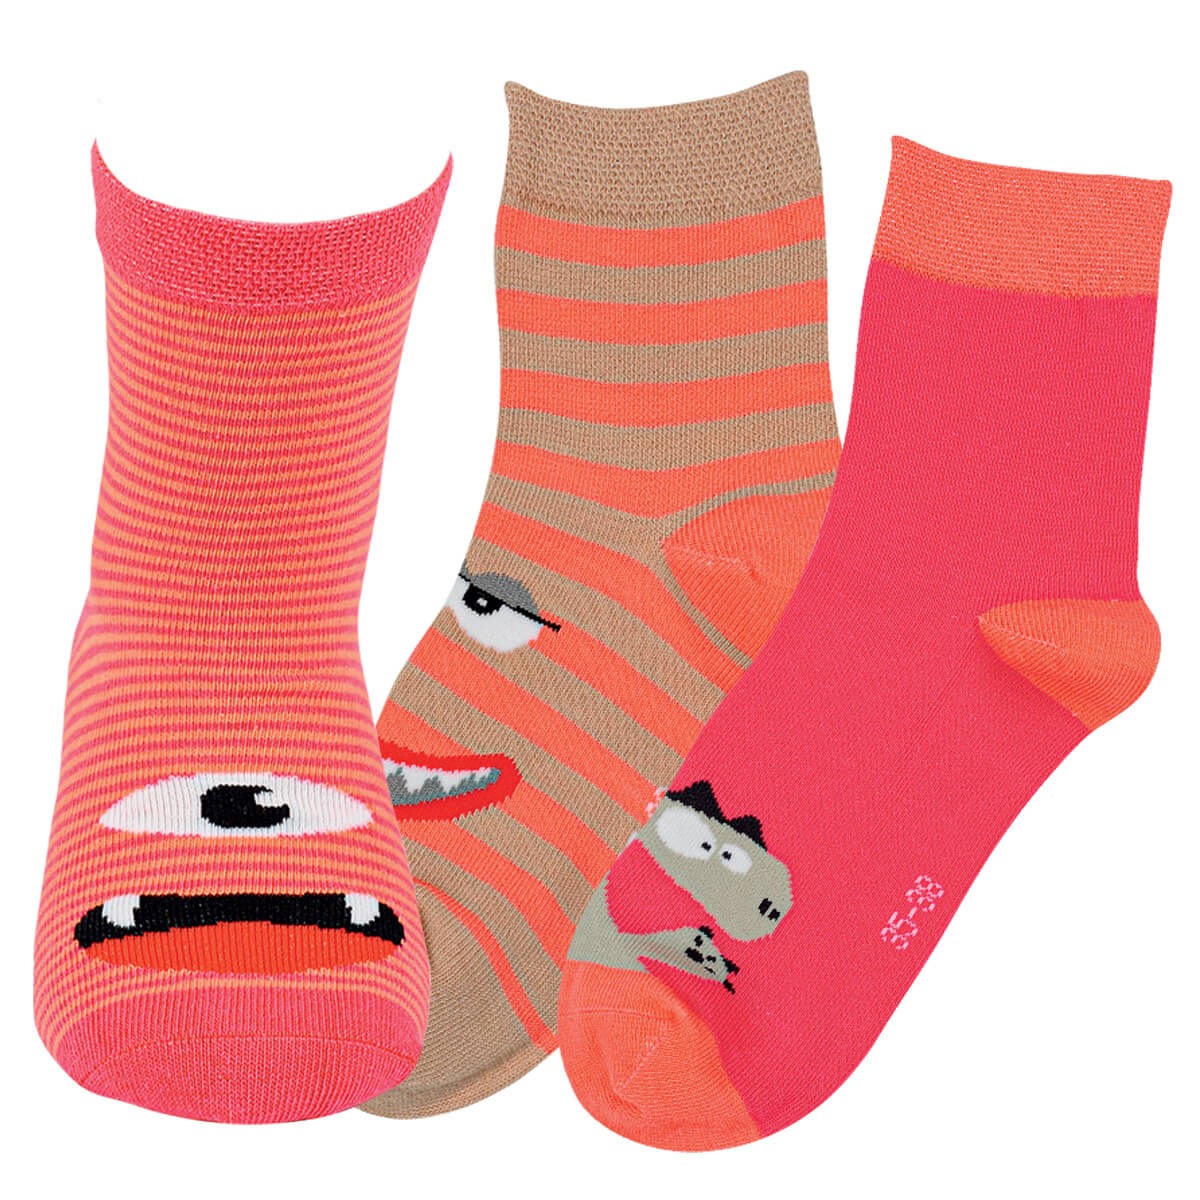 Dětské barevné bavlněné vzorované veselé ponožky RS